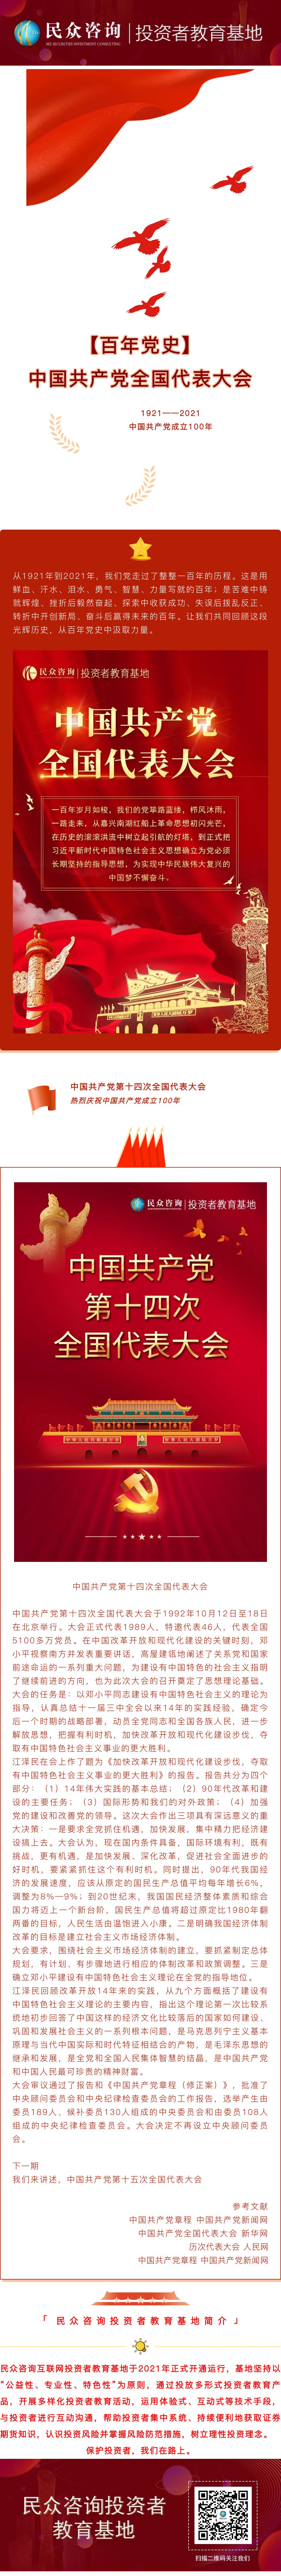 【百年党史】中国共产党第十四次全国代表大会.jpg